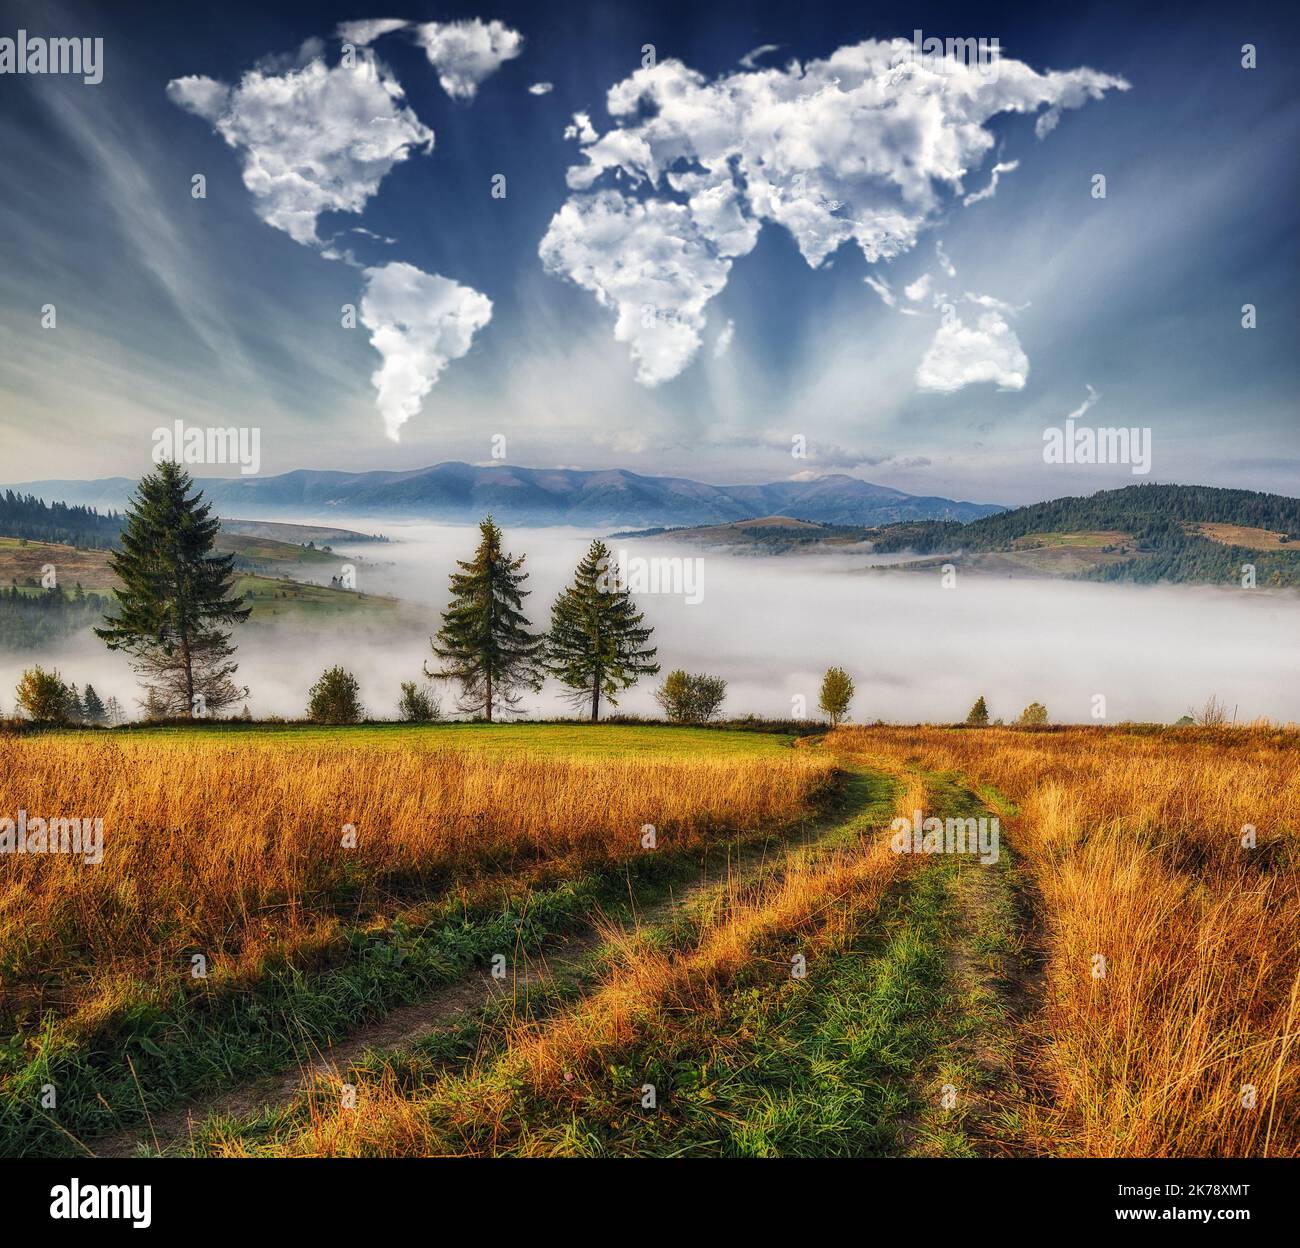 nuages sous la forme d'une carte du monde sur les montagnes. L'aube d'automne dans les Carpates. Concept de voyage et de paysage Banque D'Images